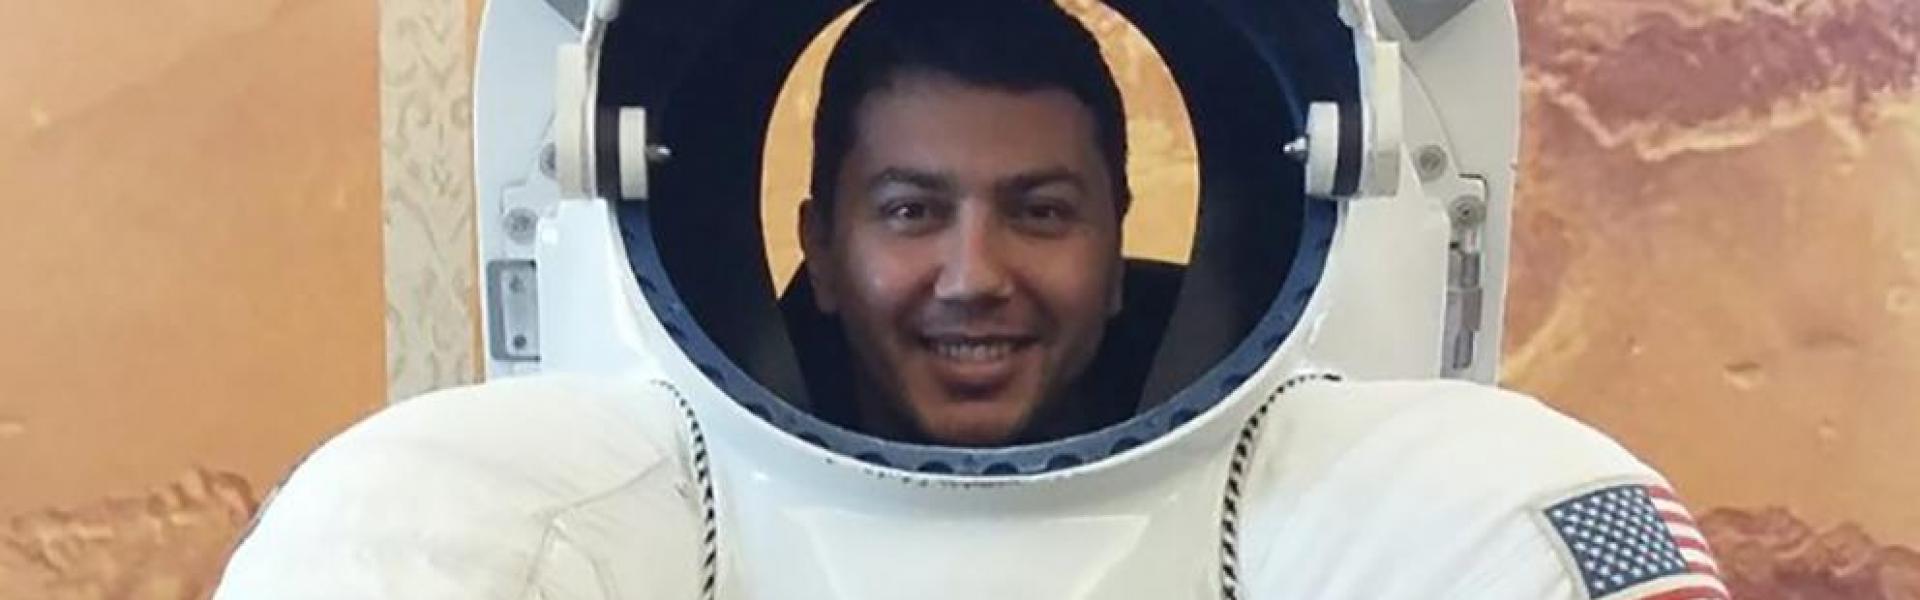 Ο Ερντογάν απελευθέρωσε Τουρκο-αμερικανό επιστήμονα της NASA που ήταν φυλακή  από το 2016